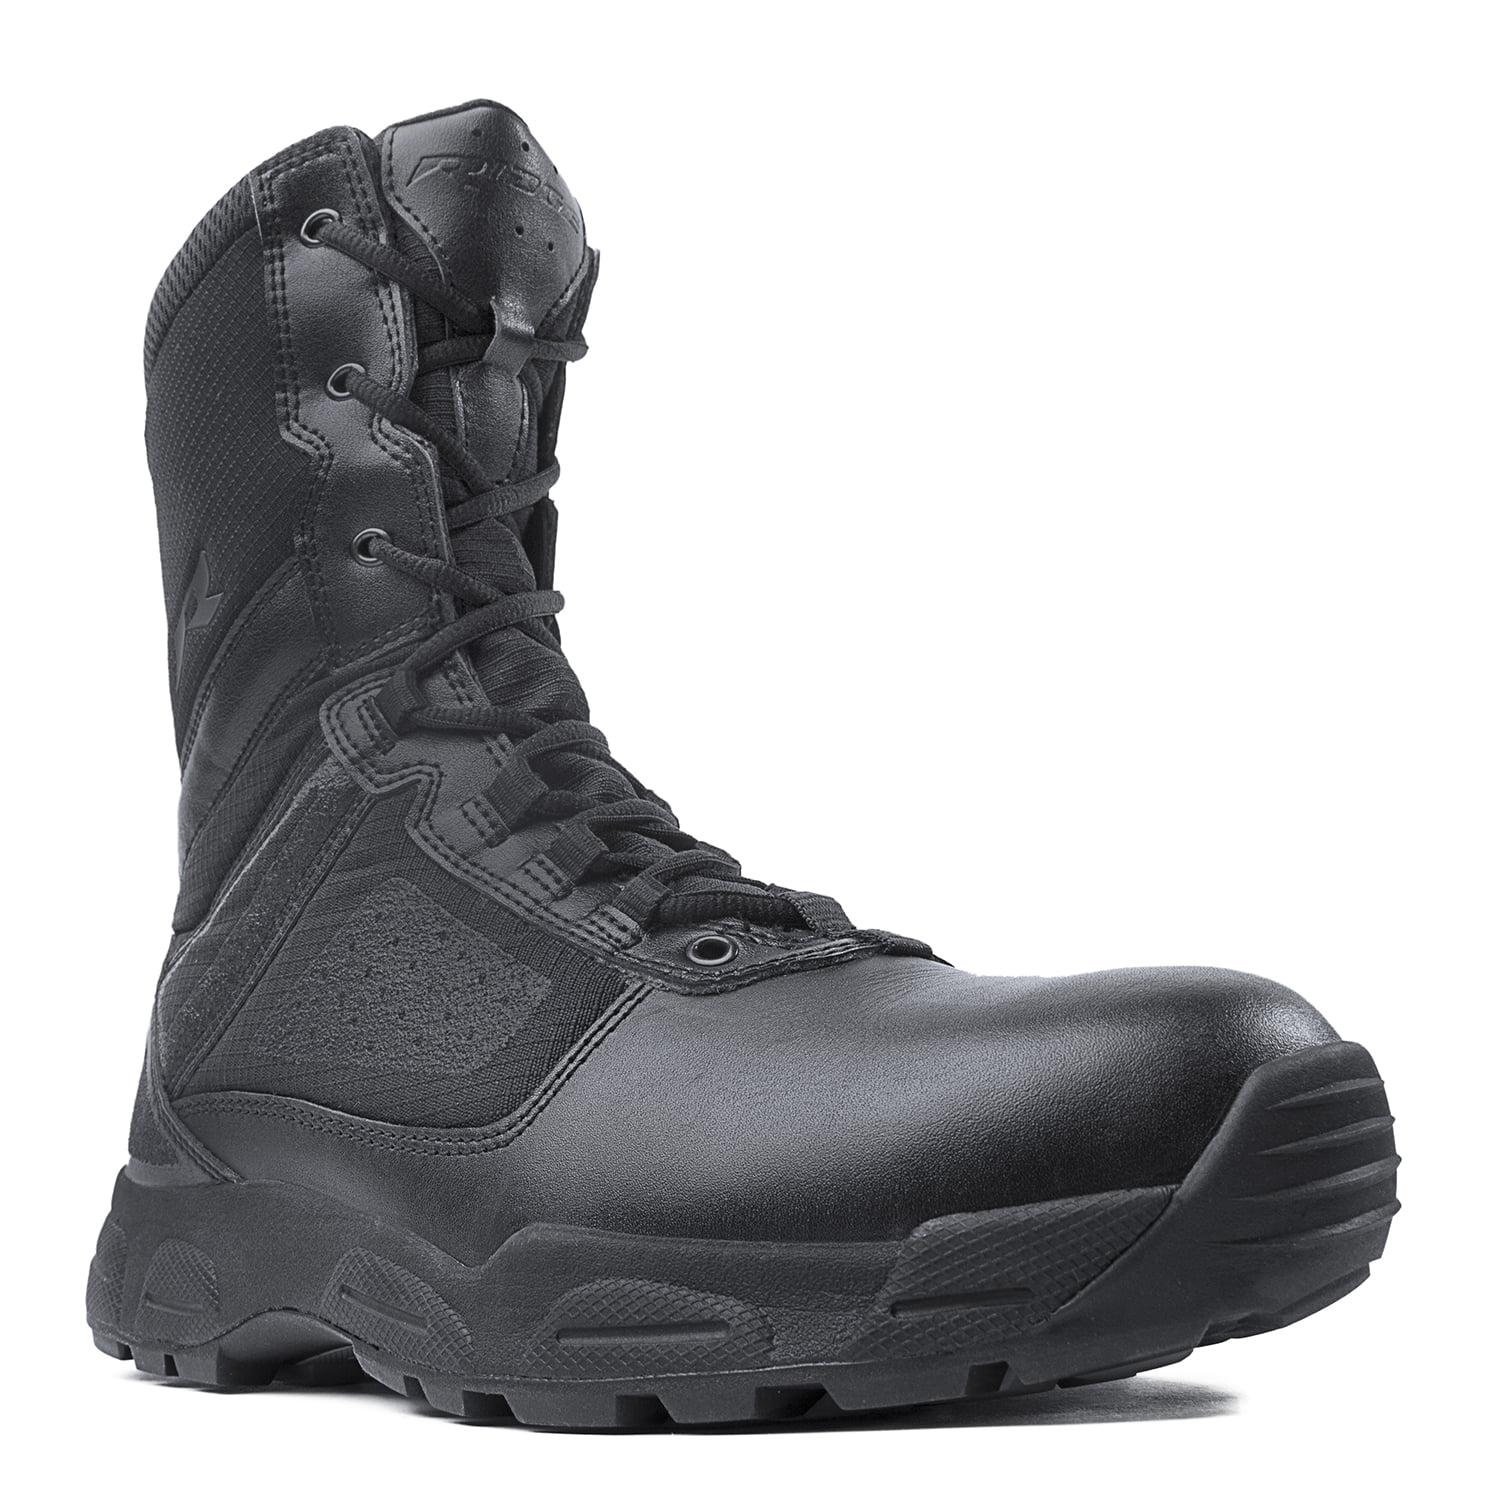 black tactical boots walmart